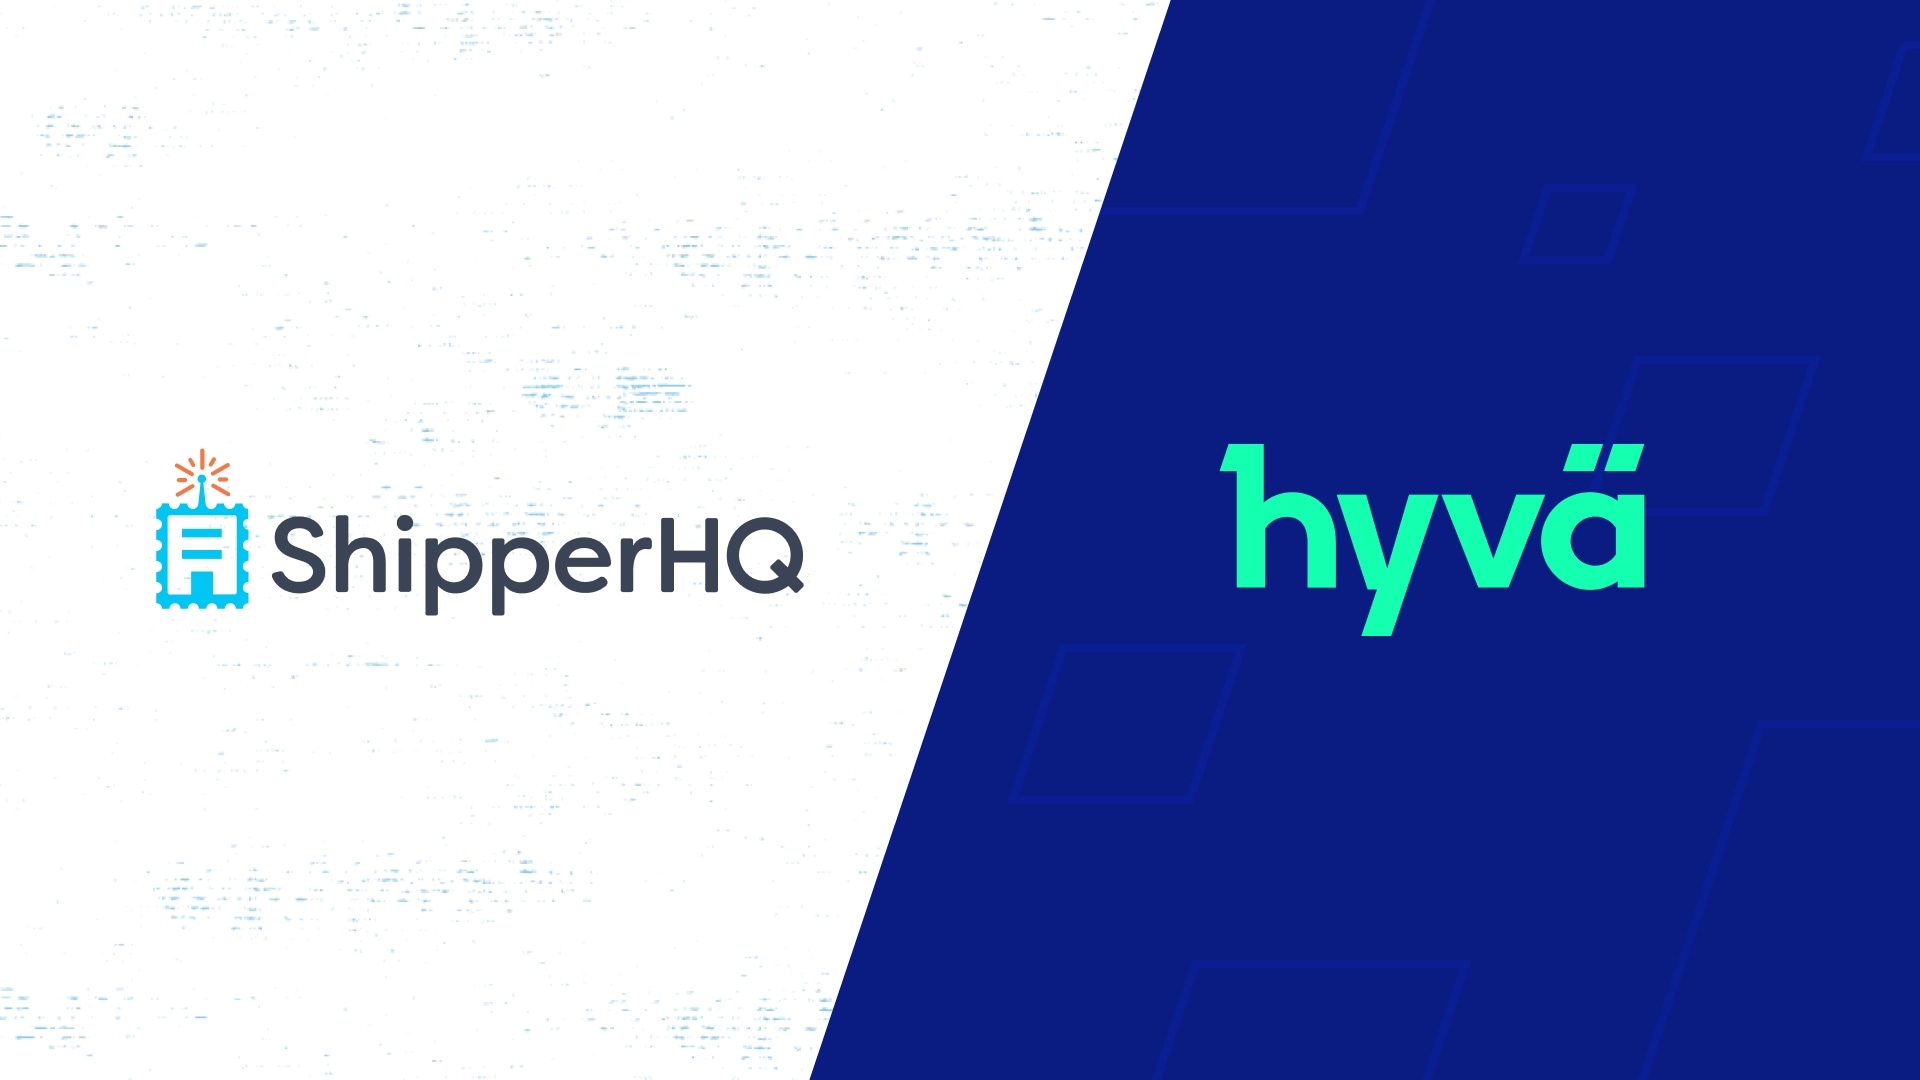 ShipperHQ and Hyvä Partnership